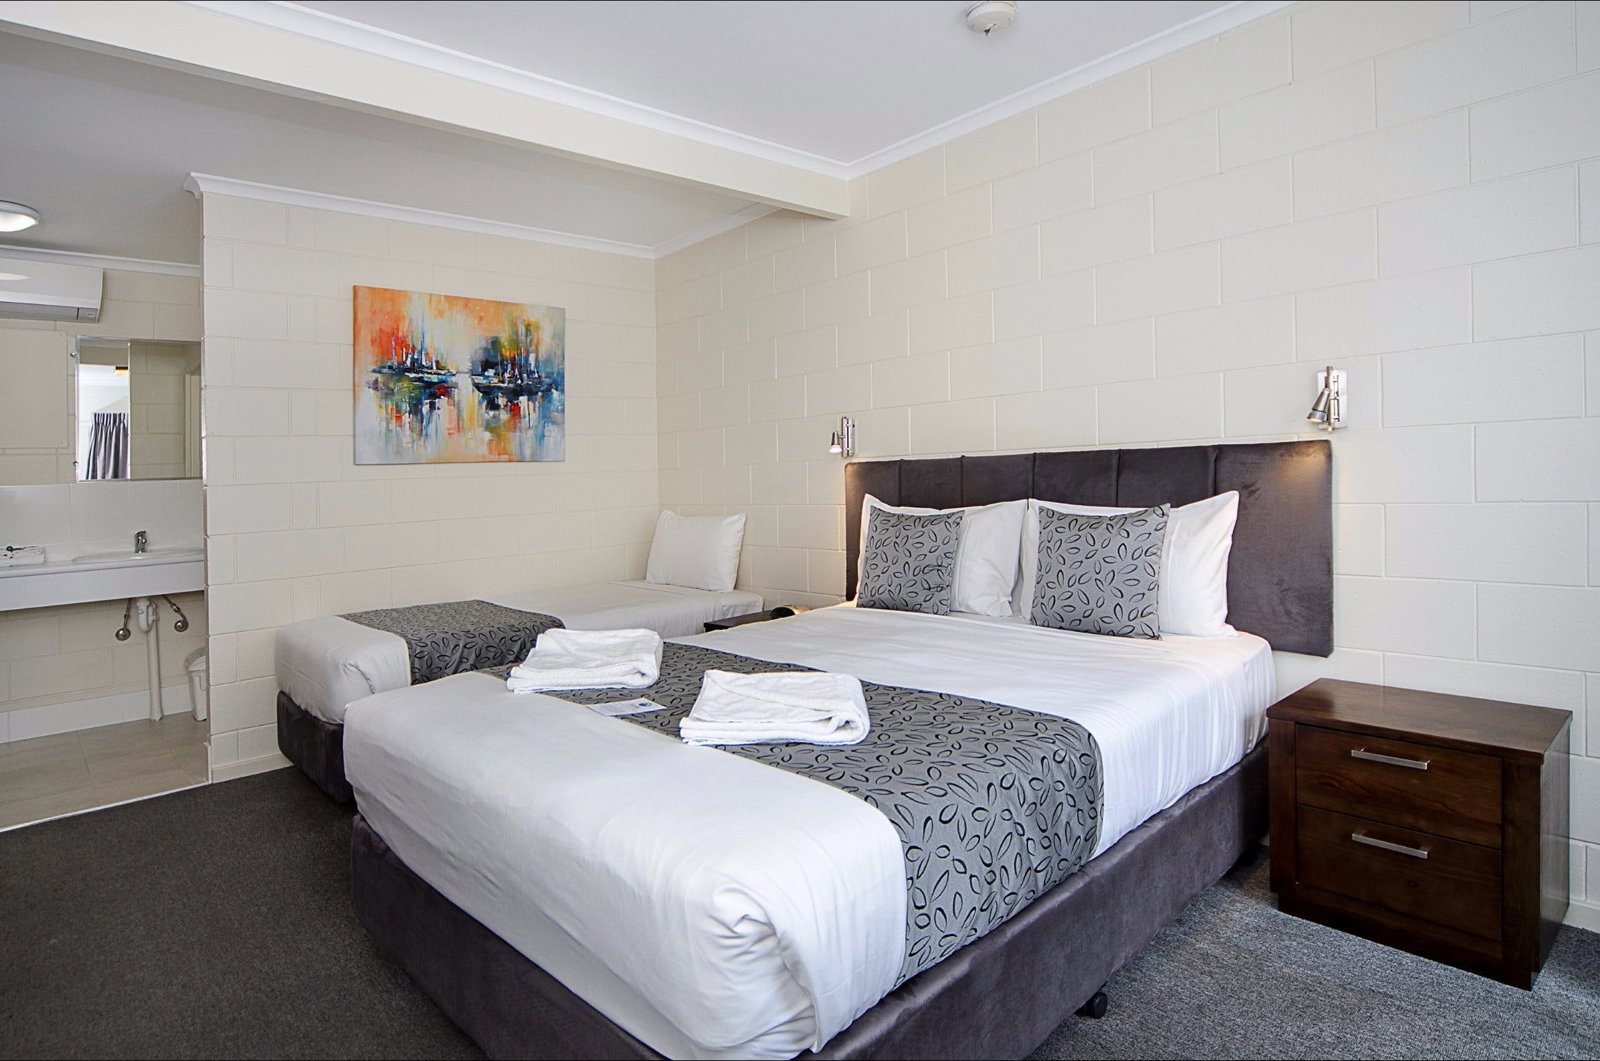  Hotels Melbourne